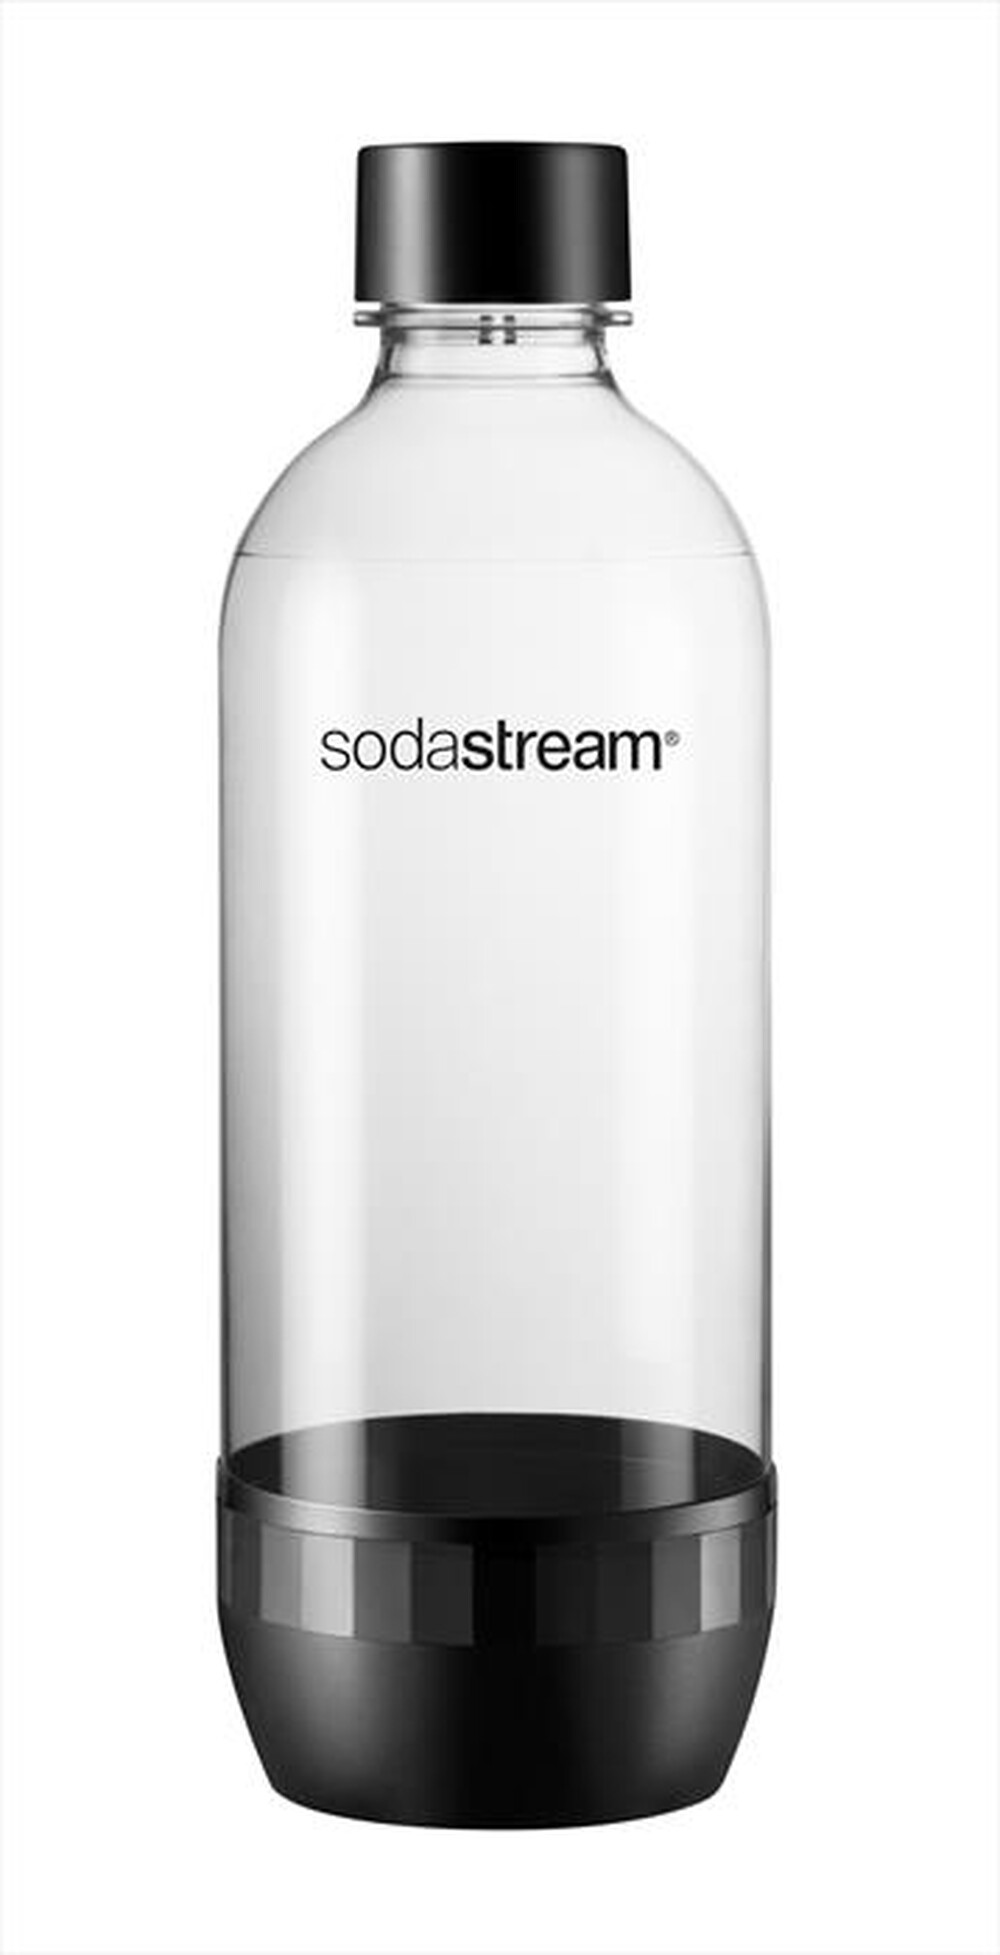 "SODASTREAM - Bottiglia in plastica (Tripack) - "